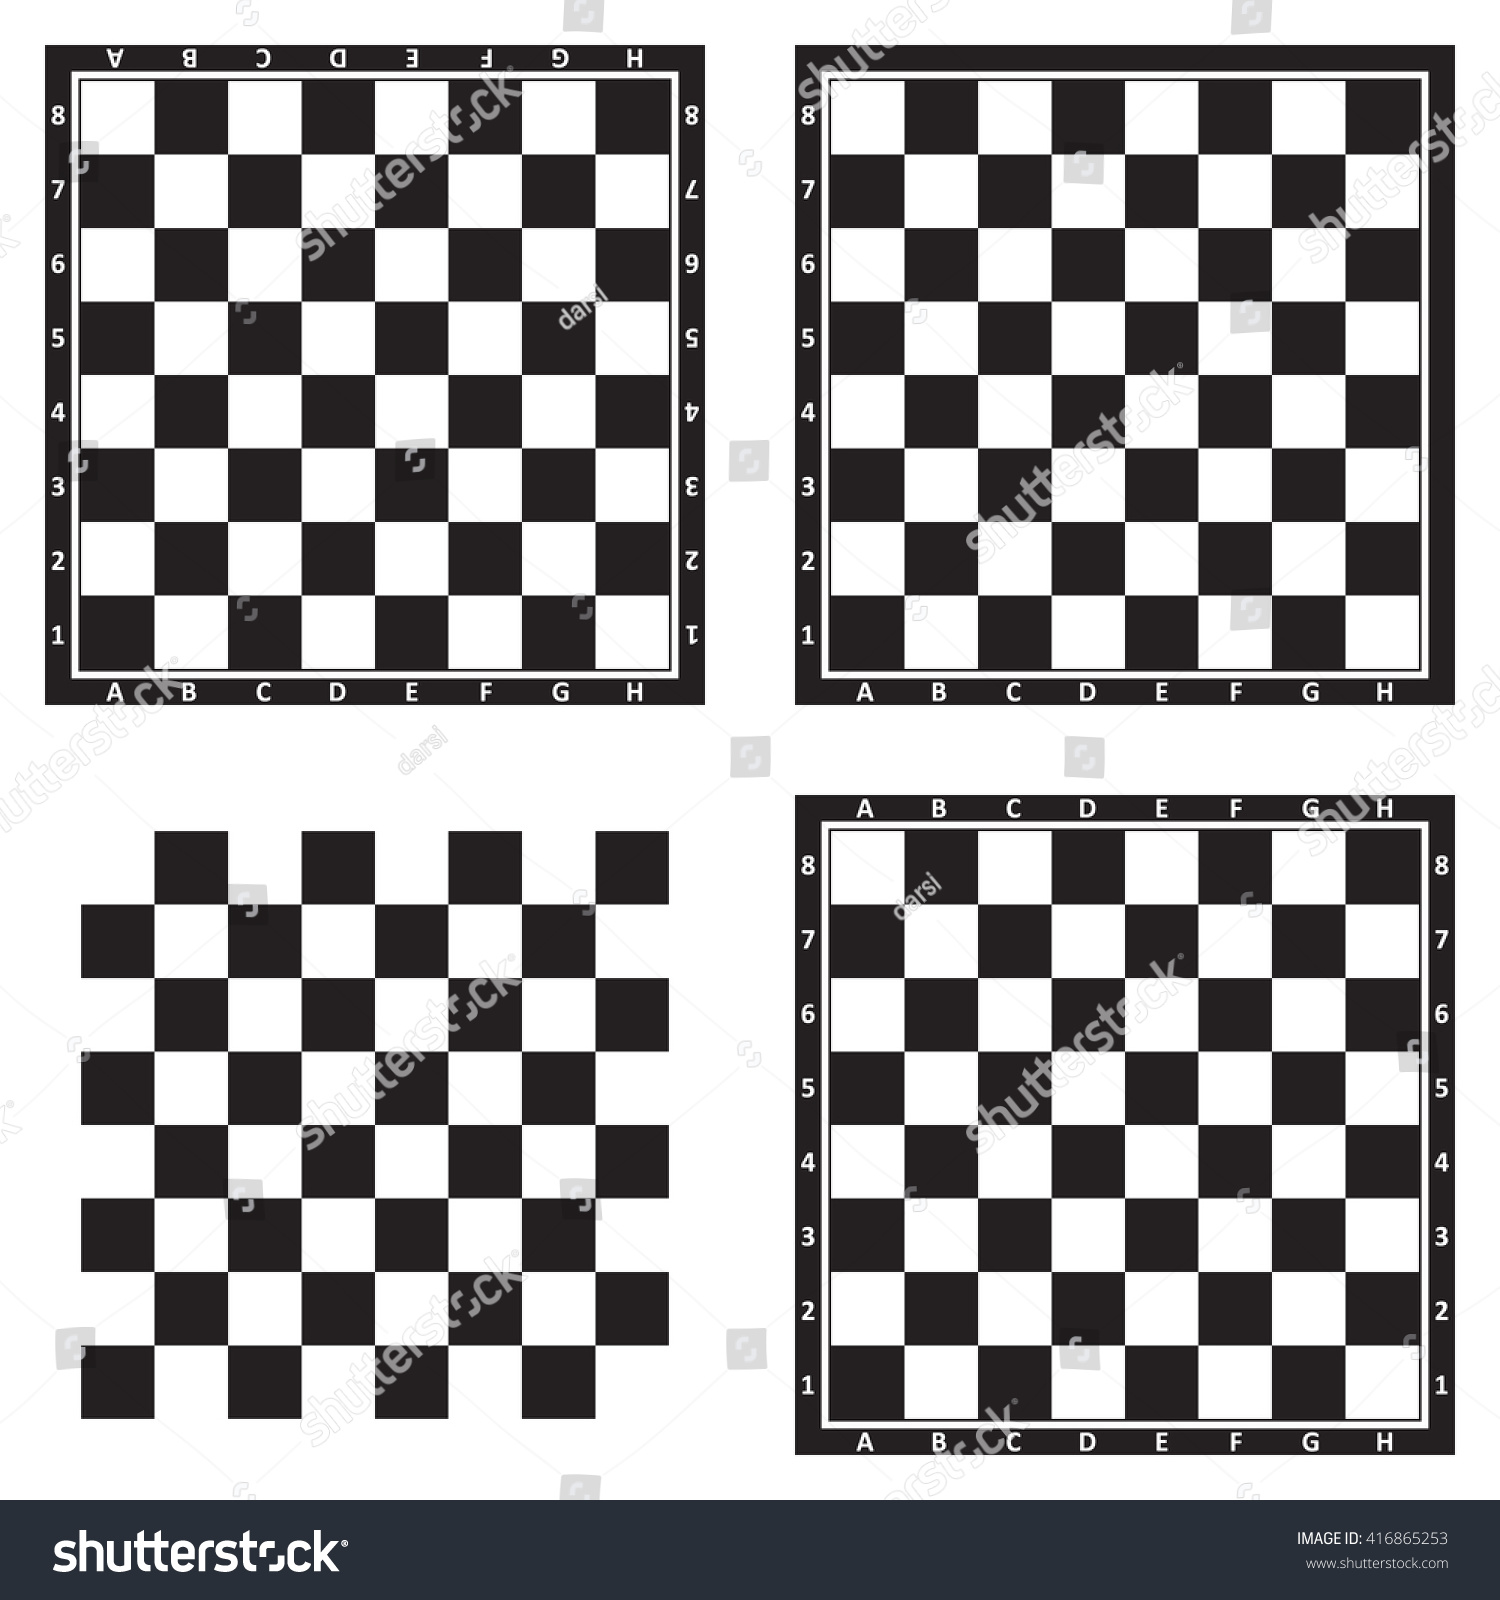 Шахматная доска картинка черно белая